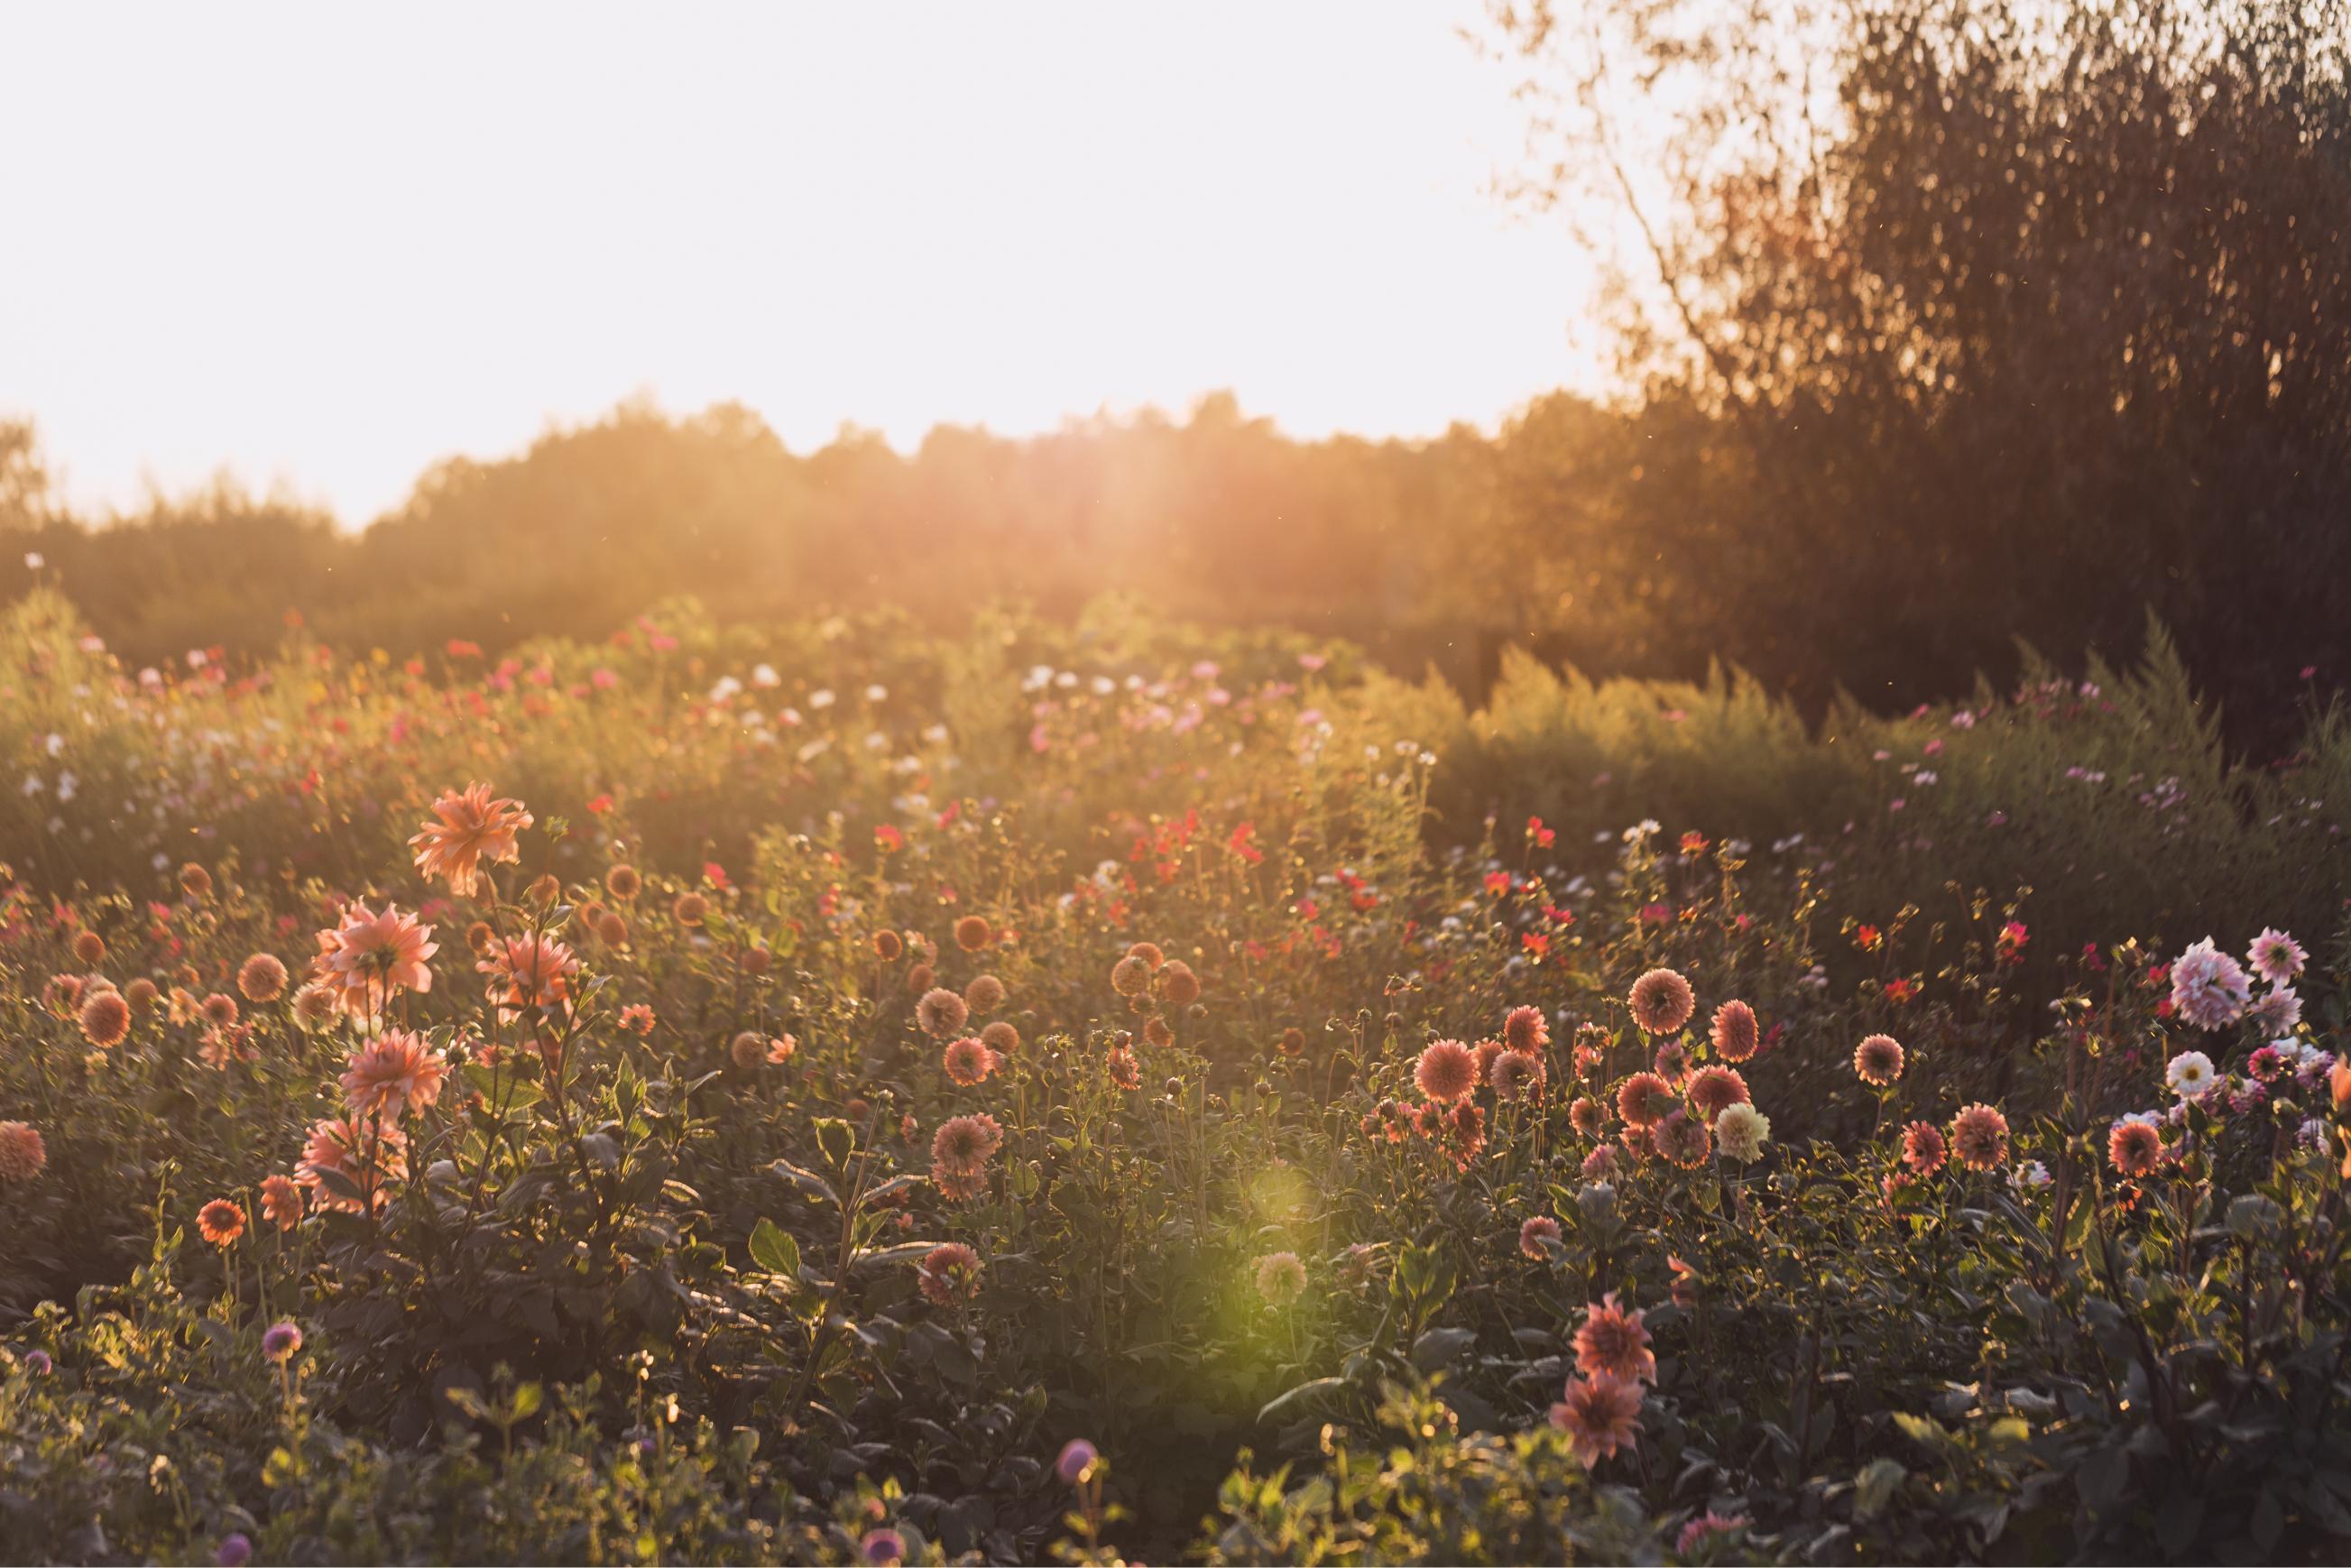 Bloemenwij-zelfplukveld-bloemenplukveld-bloemenboerderij-biologischebloemen-blijebloemen-slowflowers-astene-deinze-